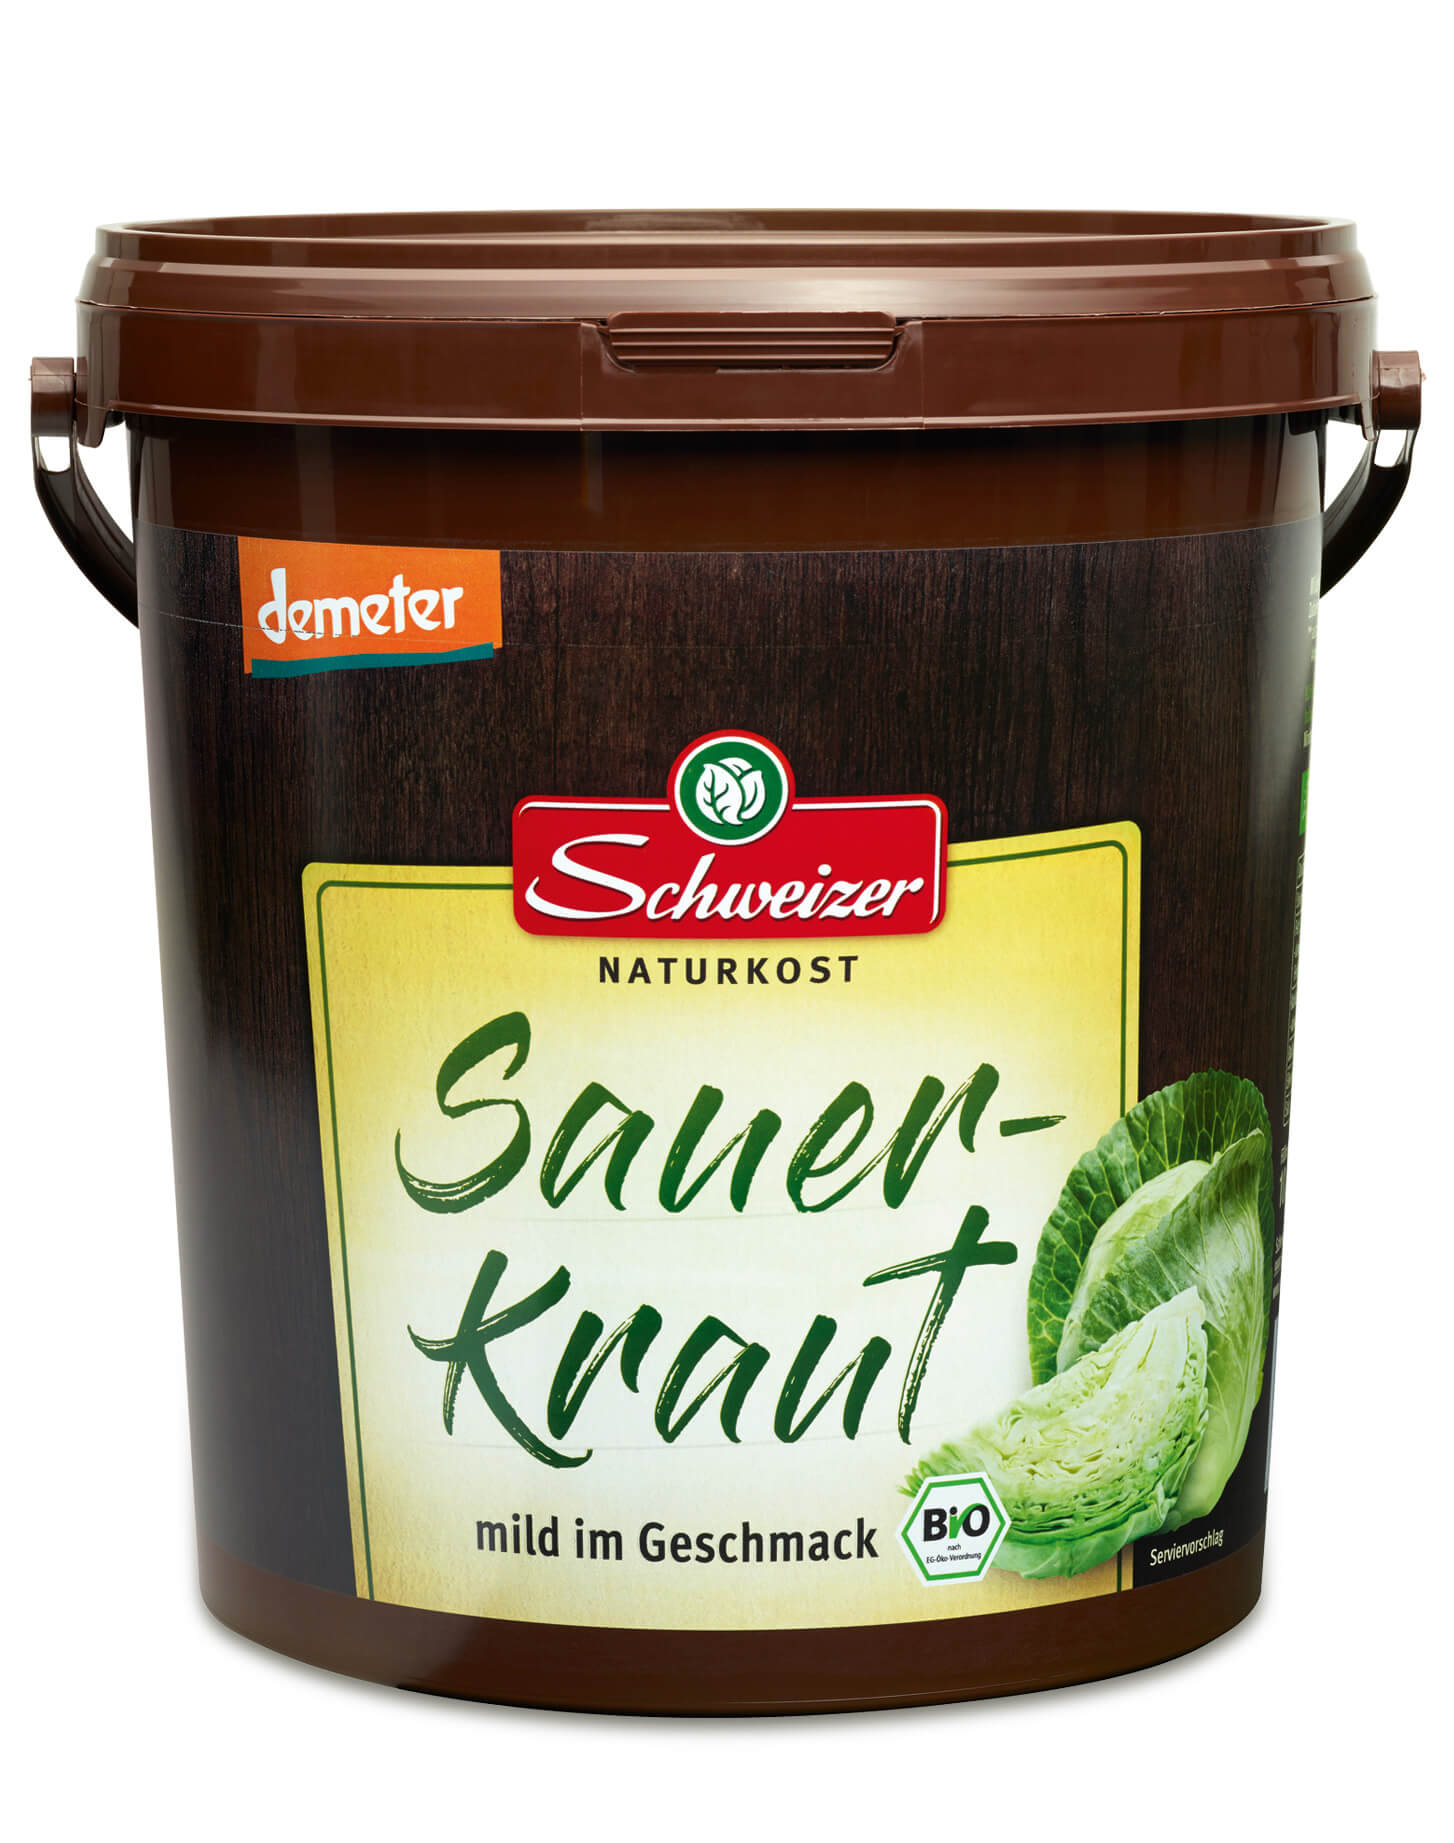 Demeter Sauerkrauteimer 10 kg